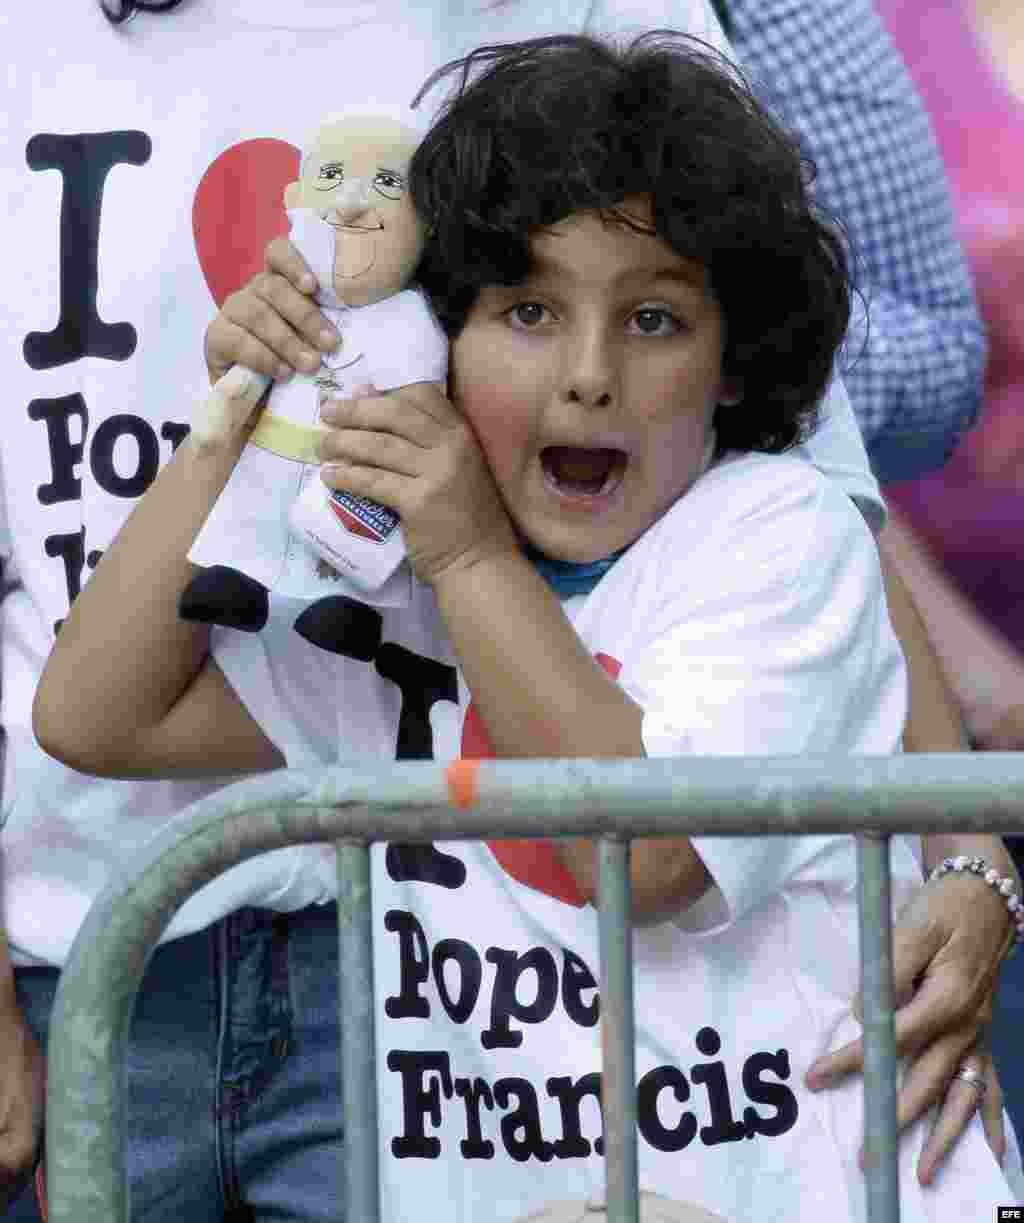 Una niña sostiene un muñeco con la imagen del papa Francisco, en el Parque Central de Nueva York. EFE